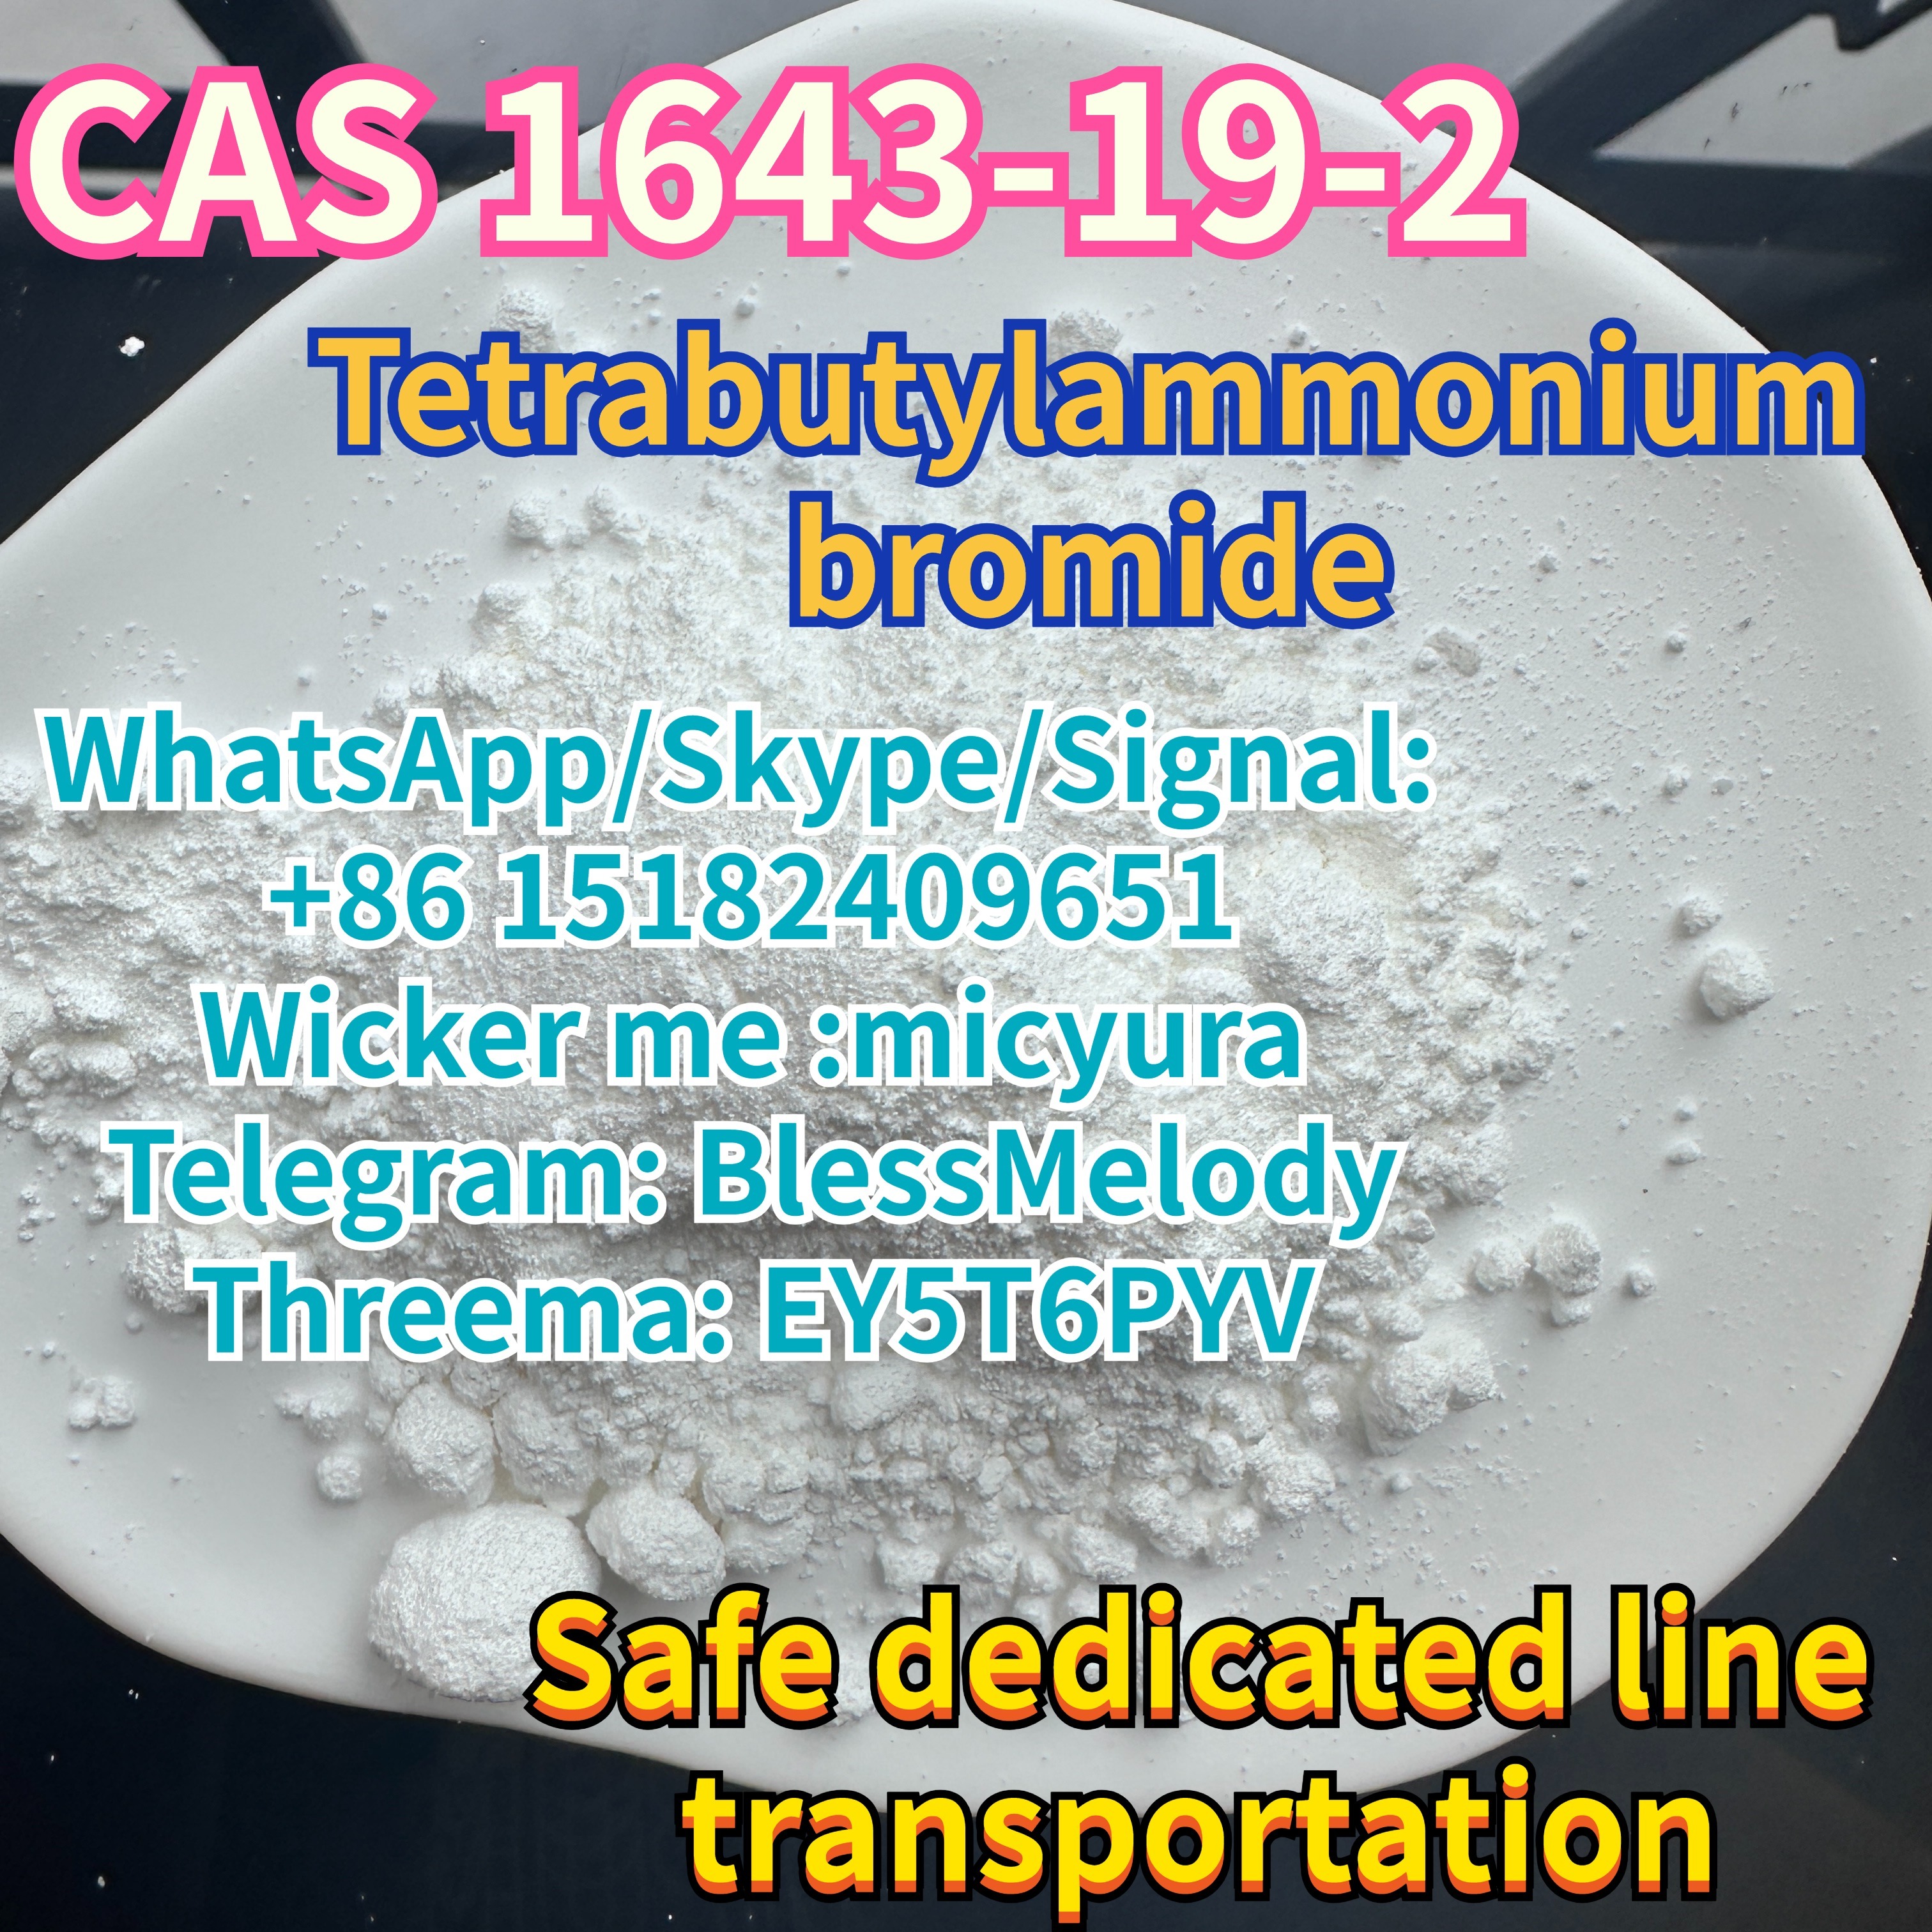 Safe dedicated line transportation Tetrabutylammonium bromide CAS 1643-19-2 100% secure door to-door transportservice